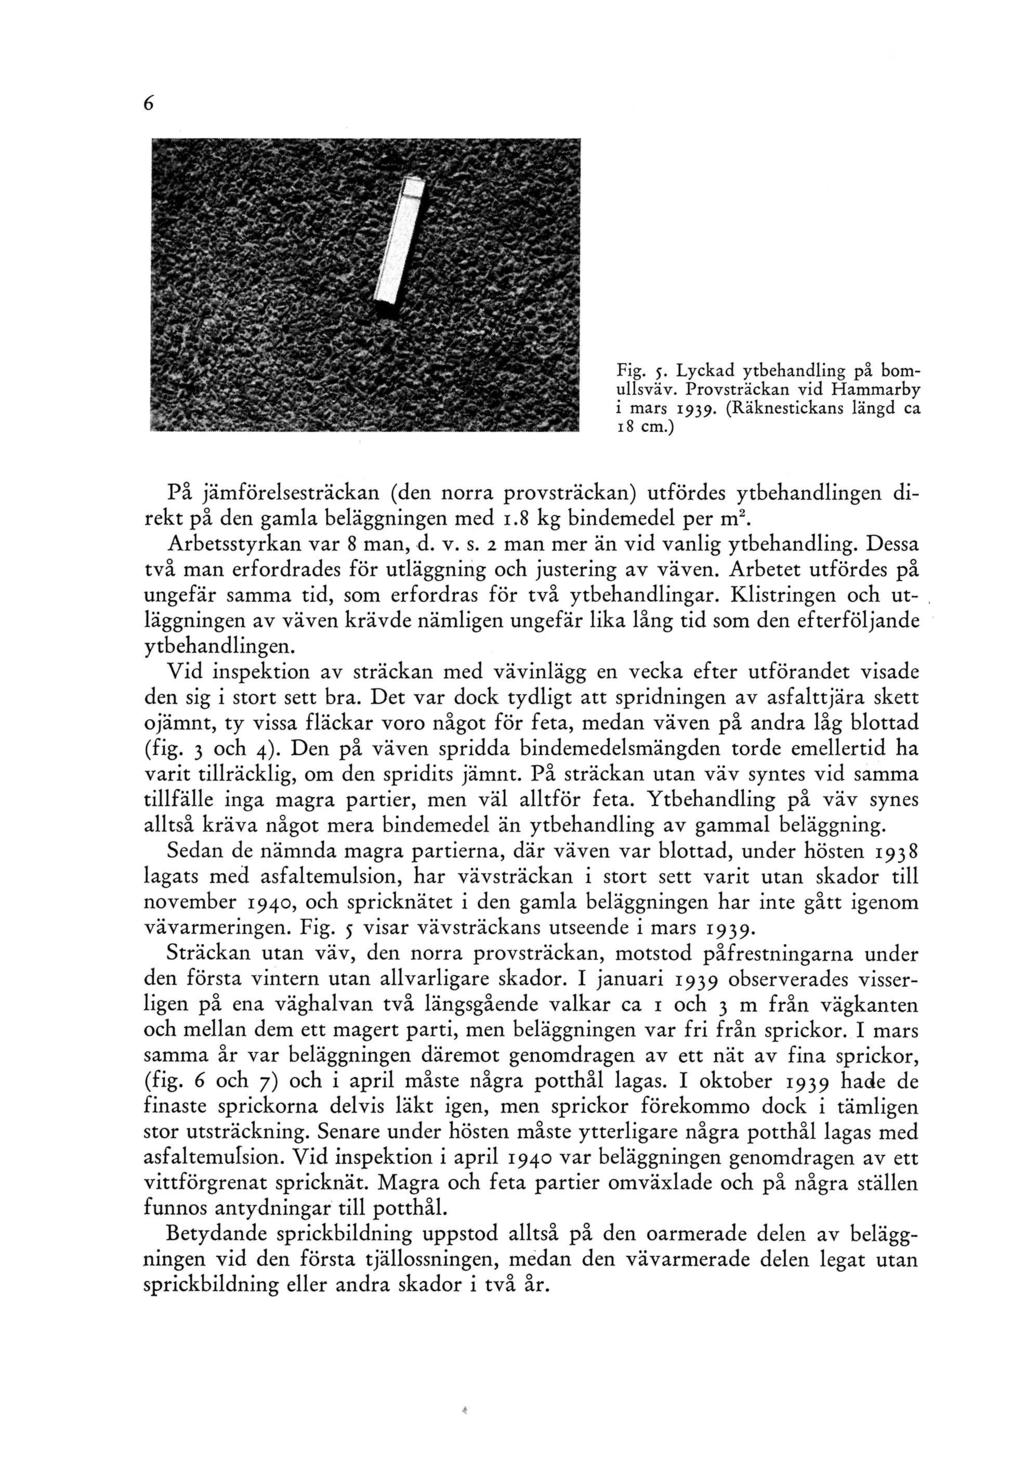 Fig. 5. Lyckad ytbehandling på bomullsväv. Provsträckan vid Hammarby i mars 1939. (Räknestickans längd ca 18 cm.